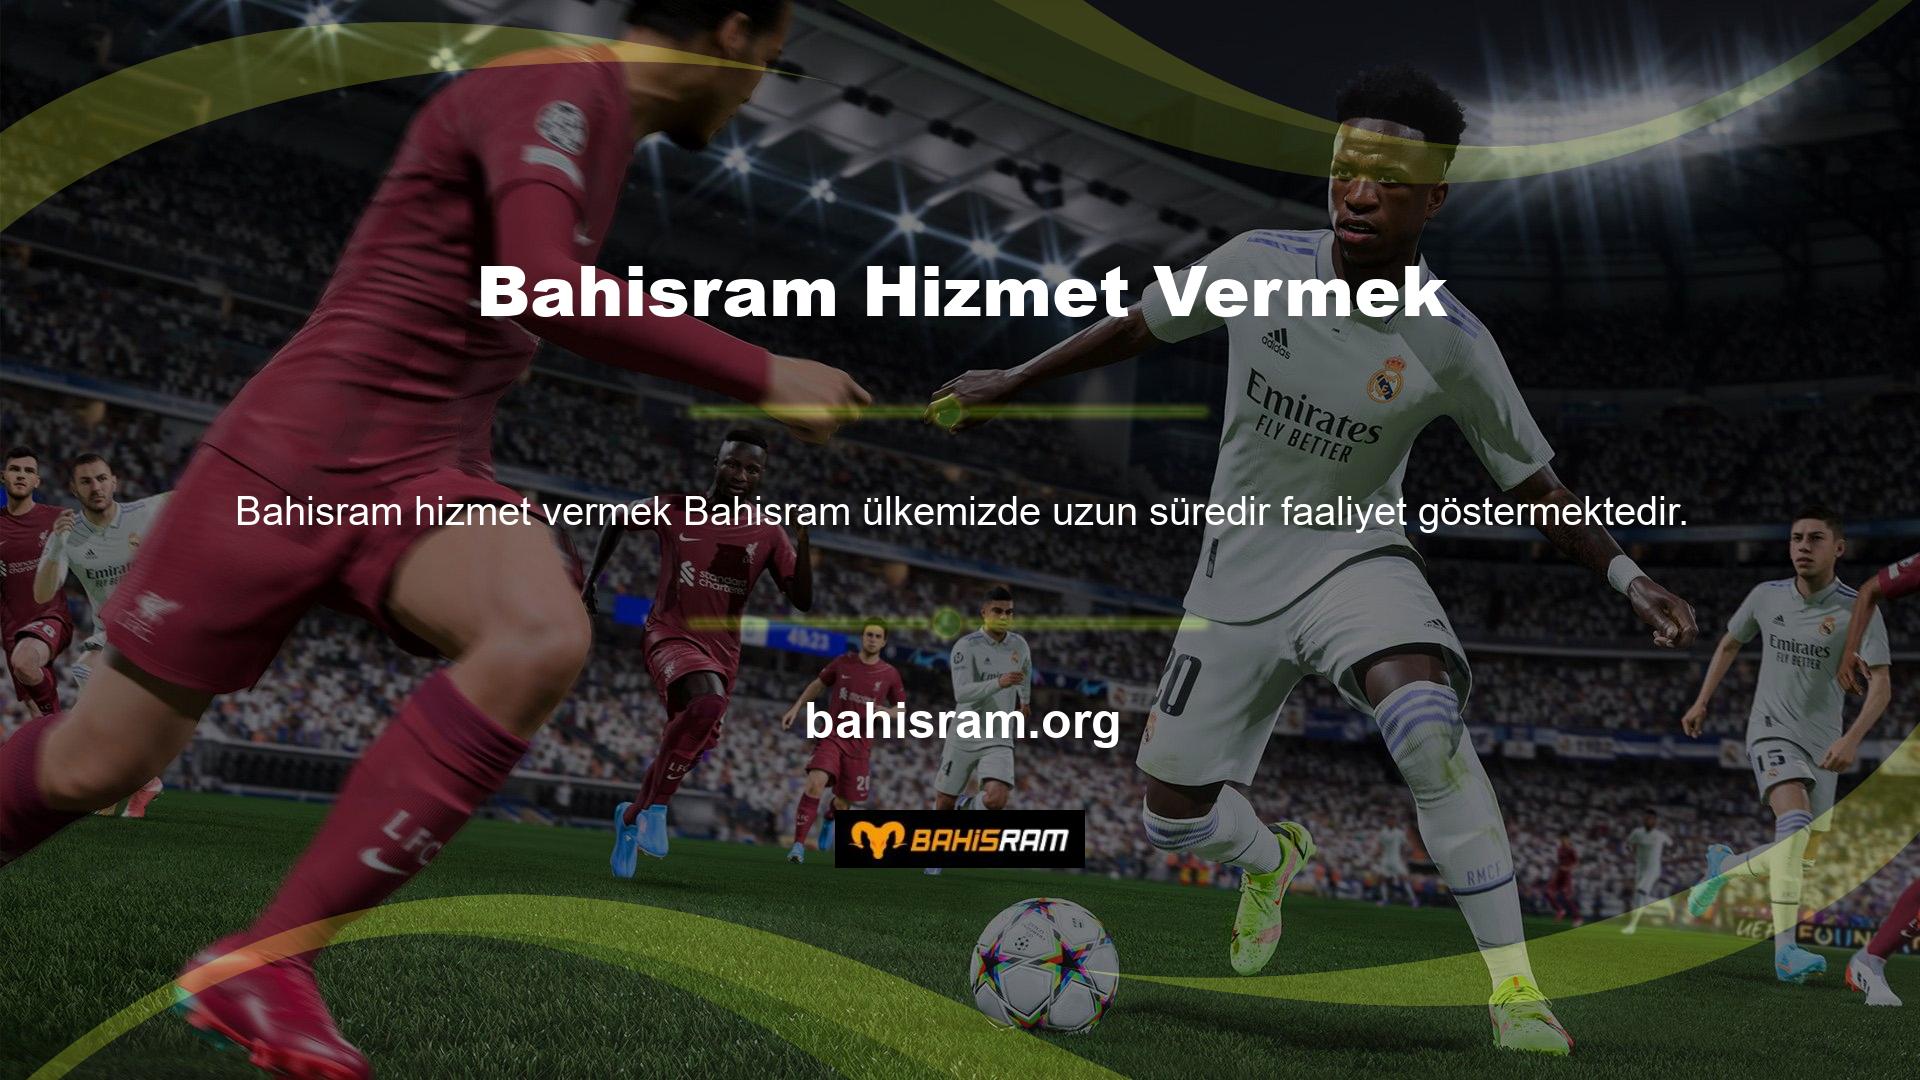 Bahisram, Türkiye'de geniş bir kullanıcı tabanı oluşturmayı başardı ve lisansı beklentileri karşıladı